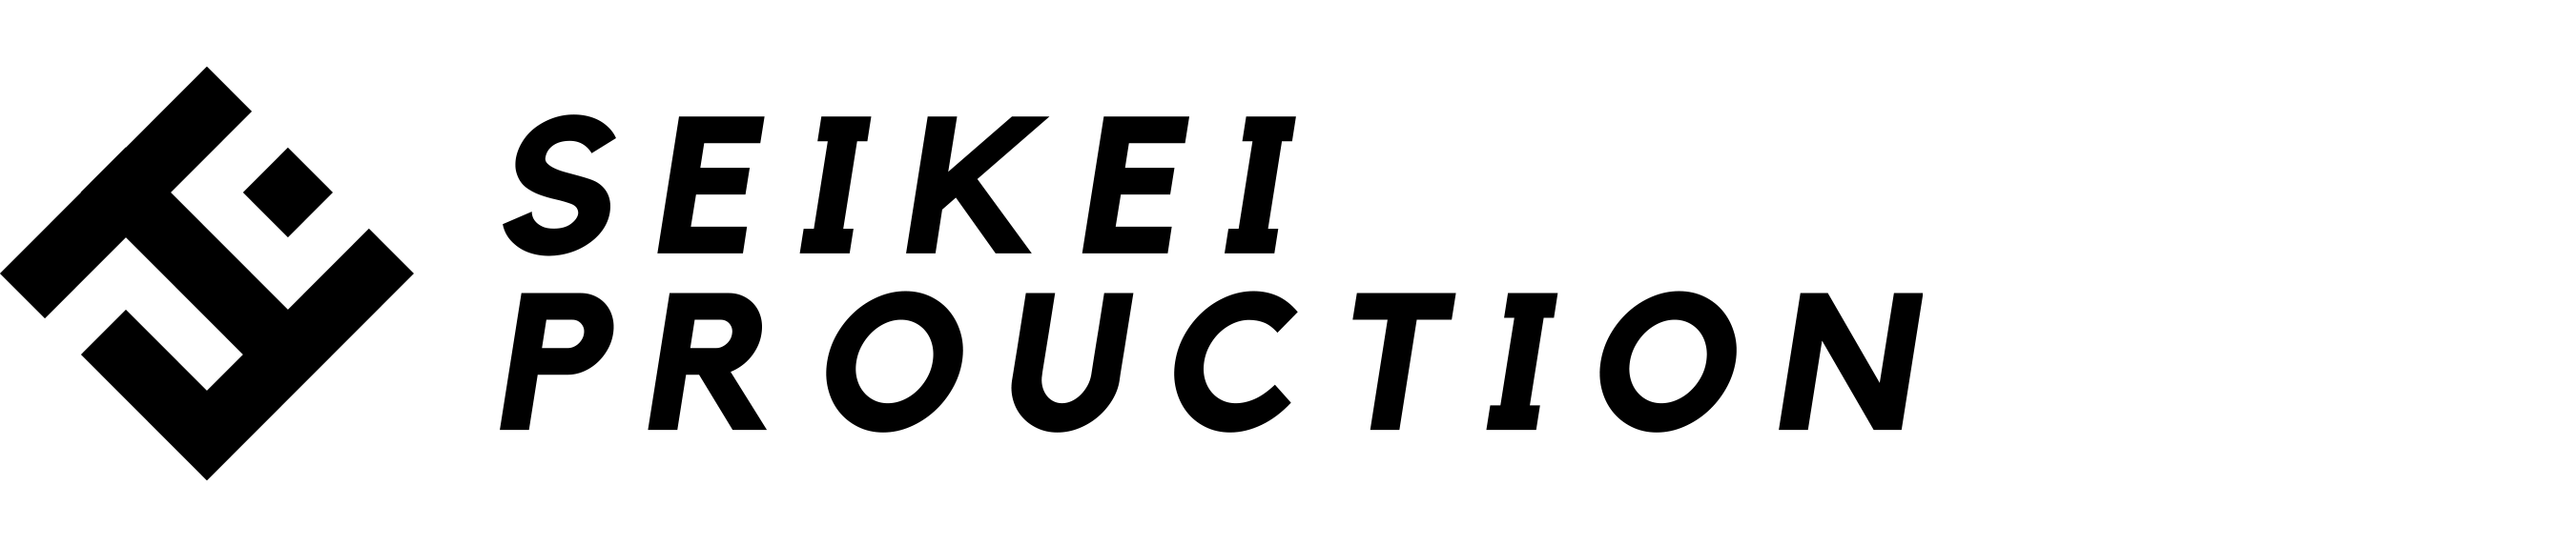 Seikei Production